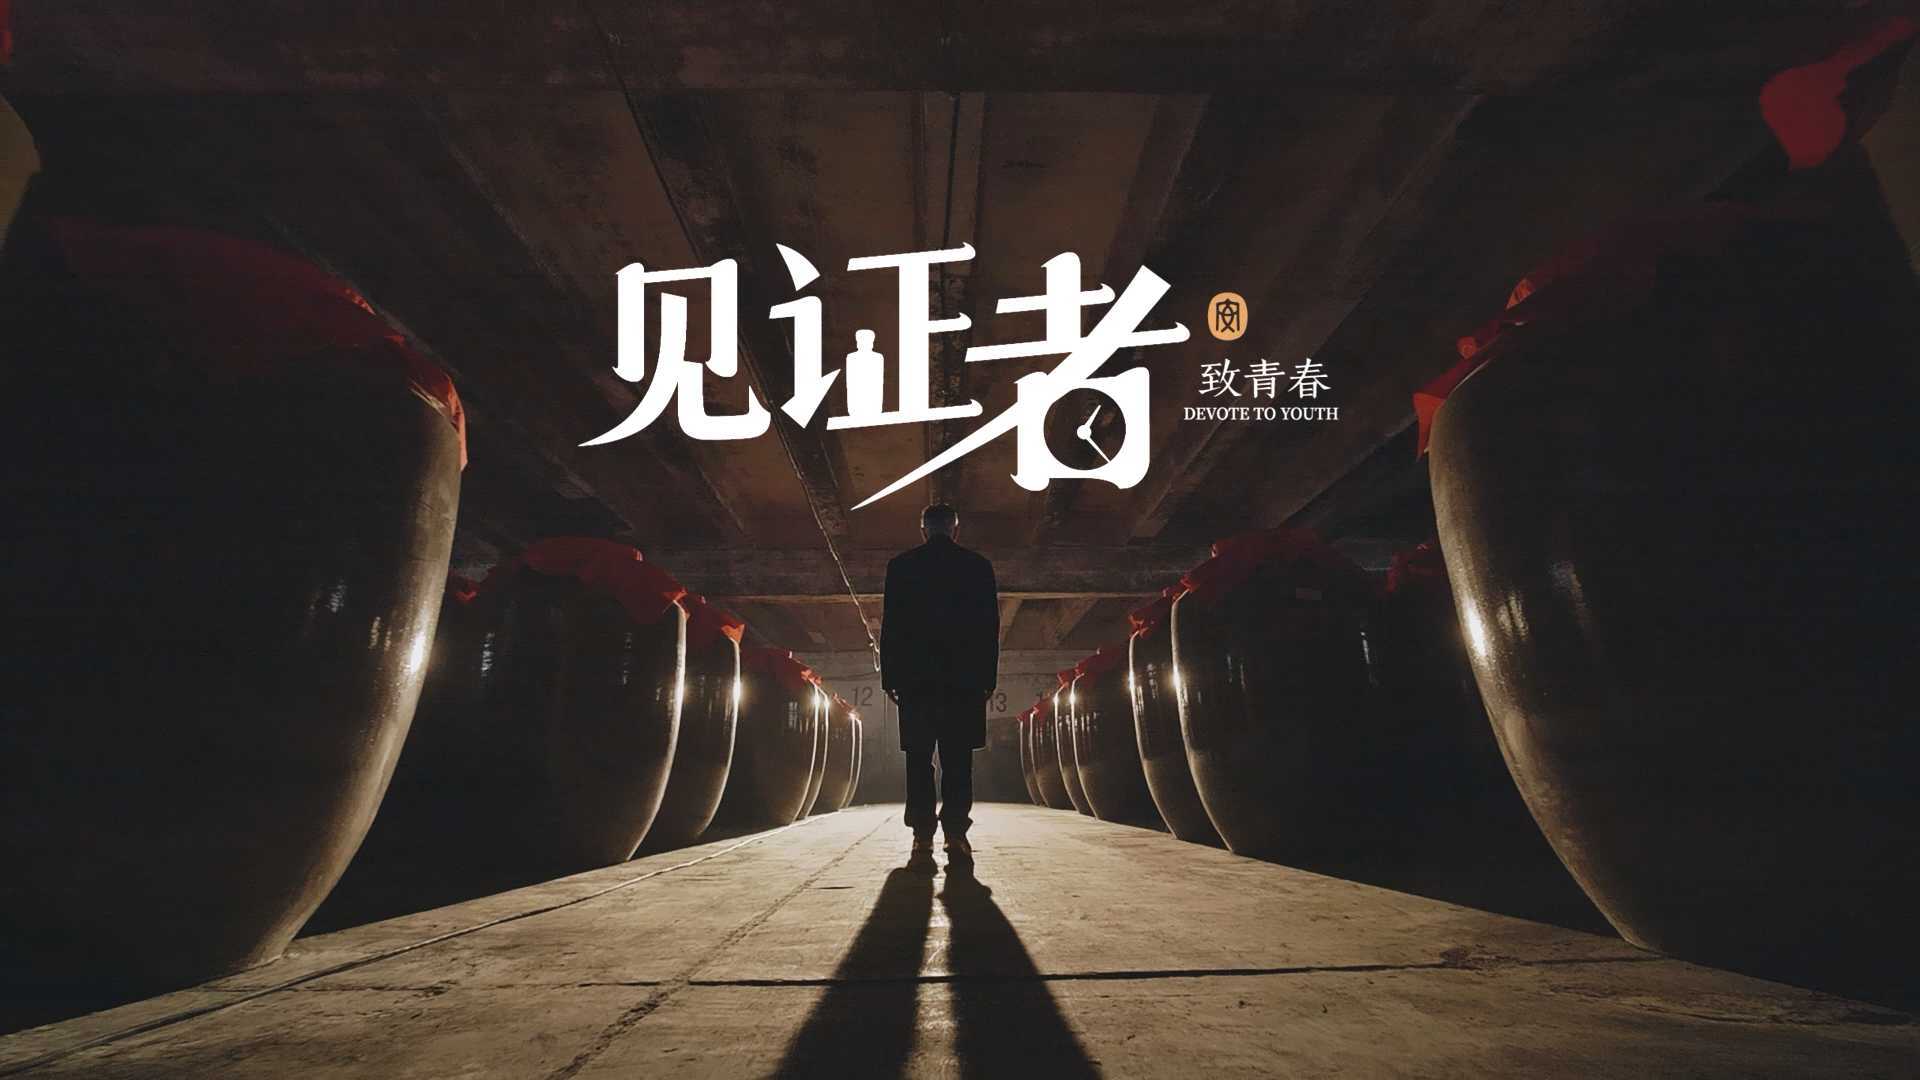 贵州安酒建厂70周年纪录片——《见证者.致青春》